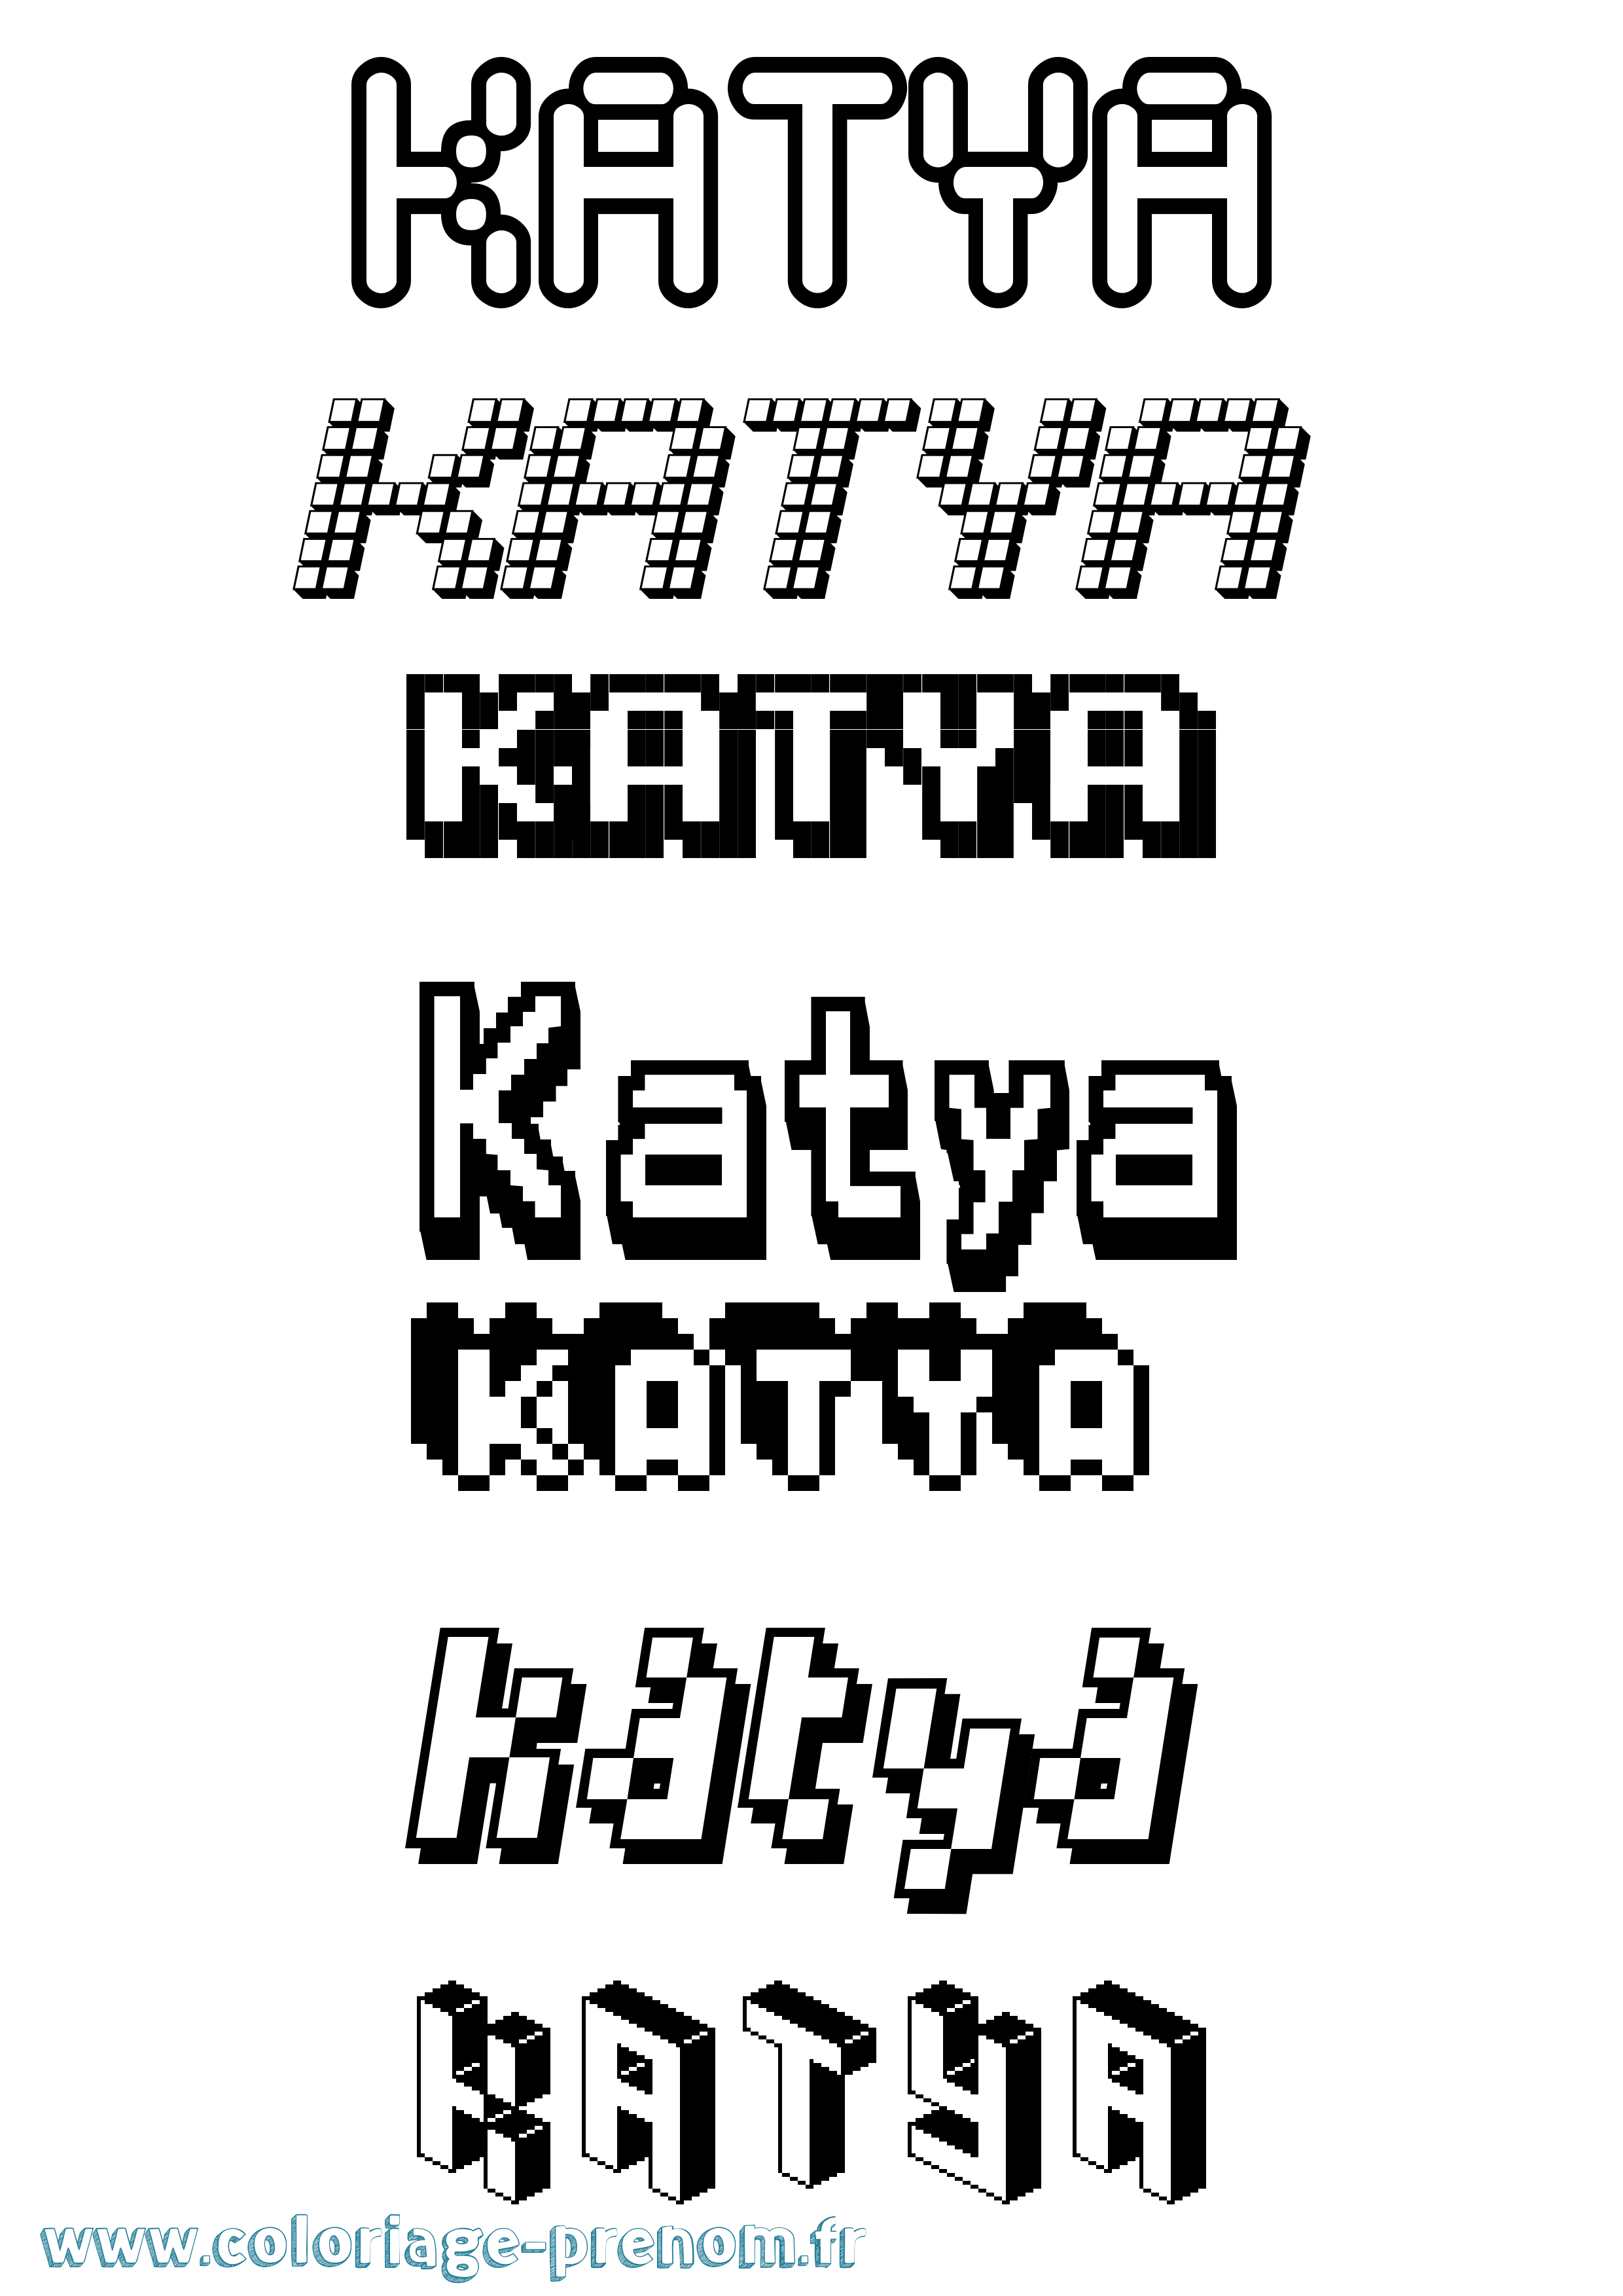 Coloriage prénom Katya Pixel